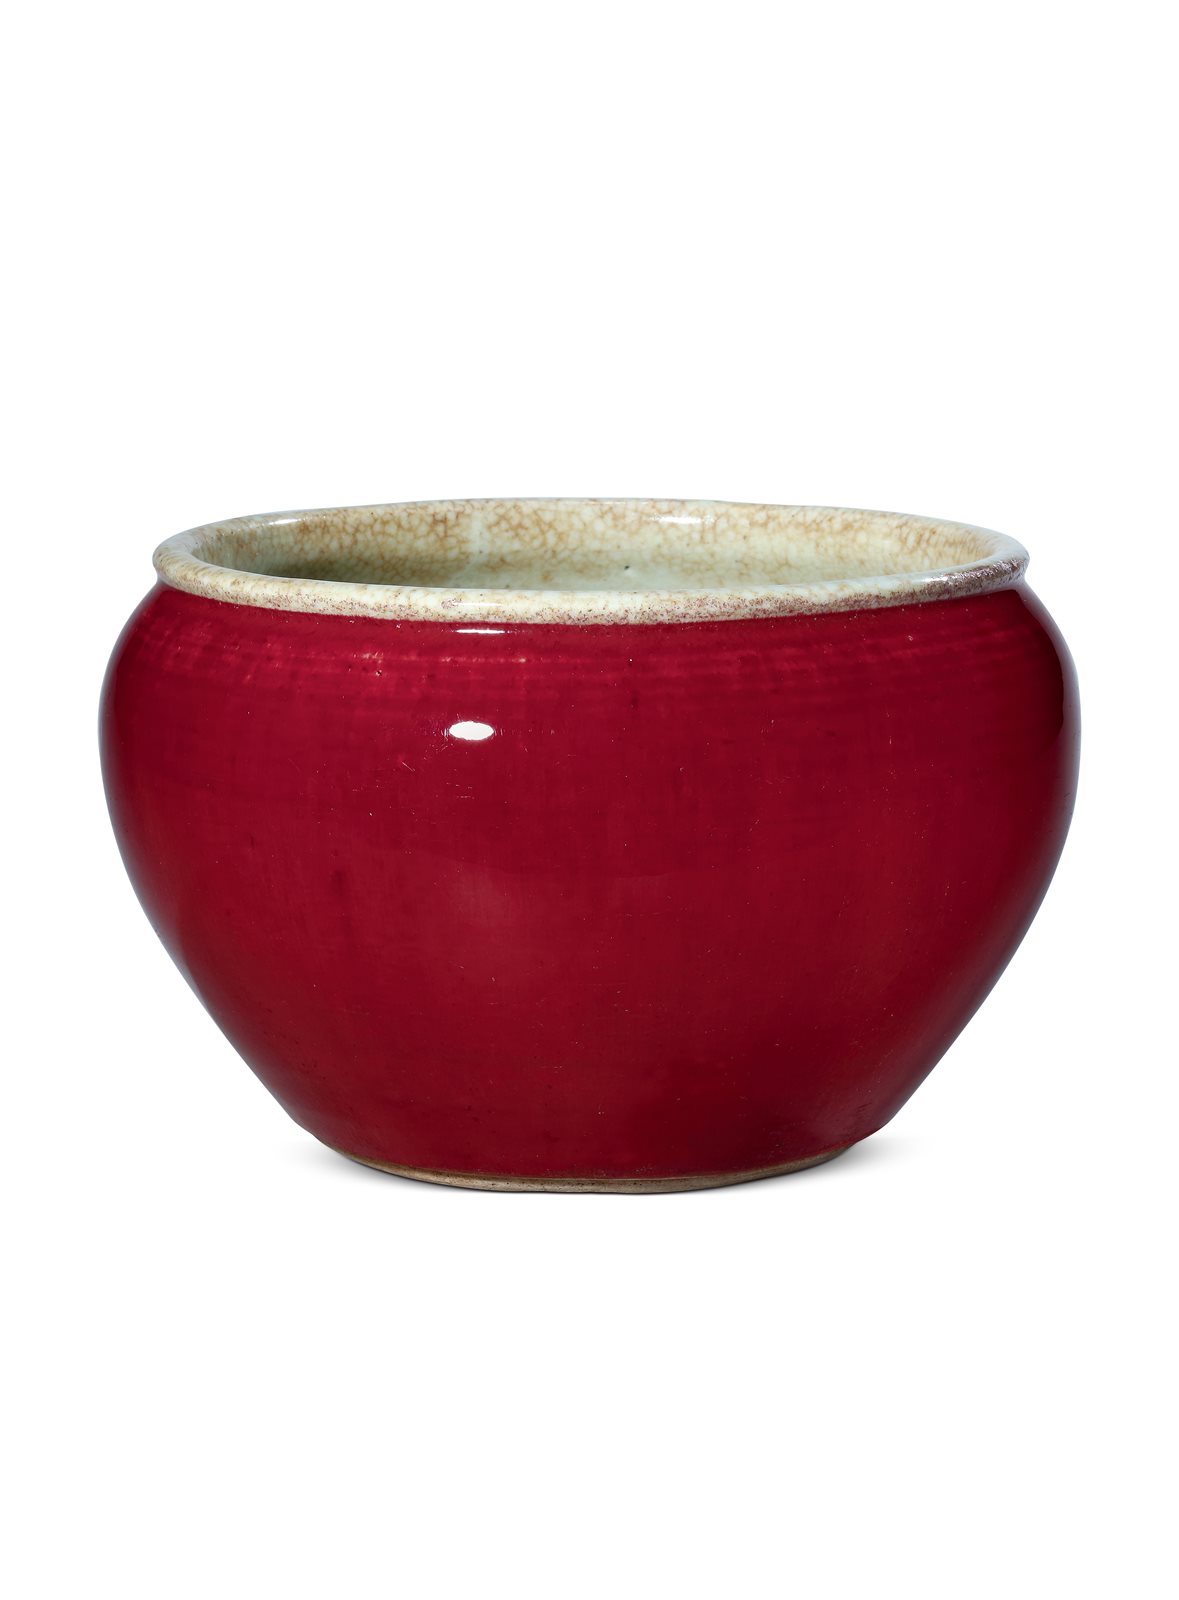 清早期 红釉钵式缸